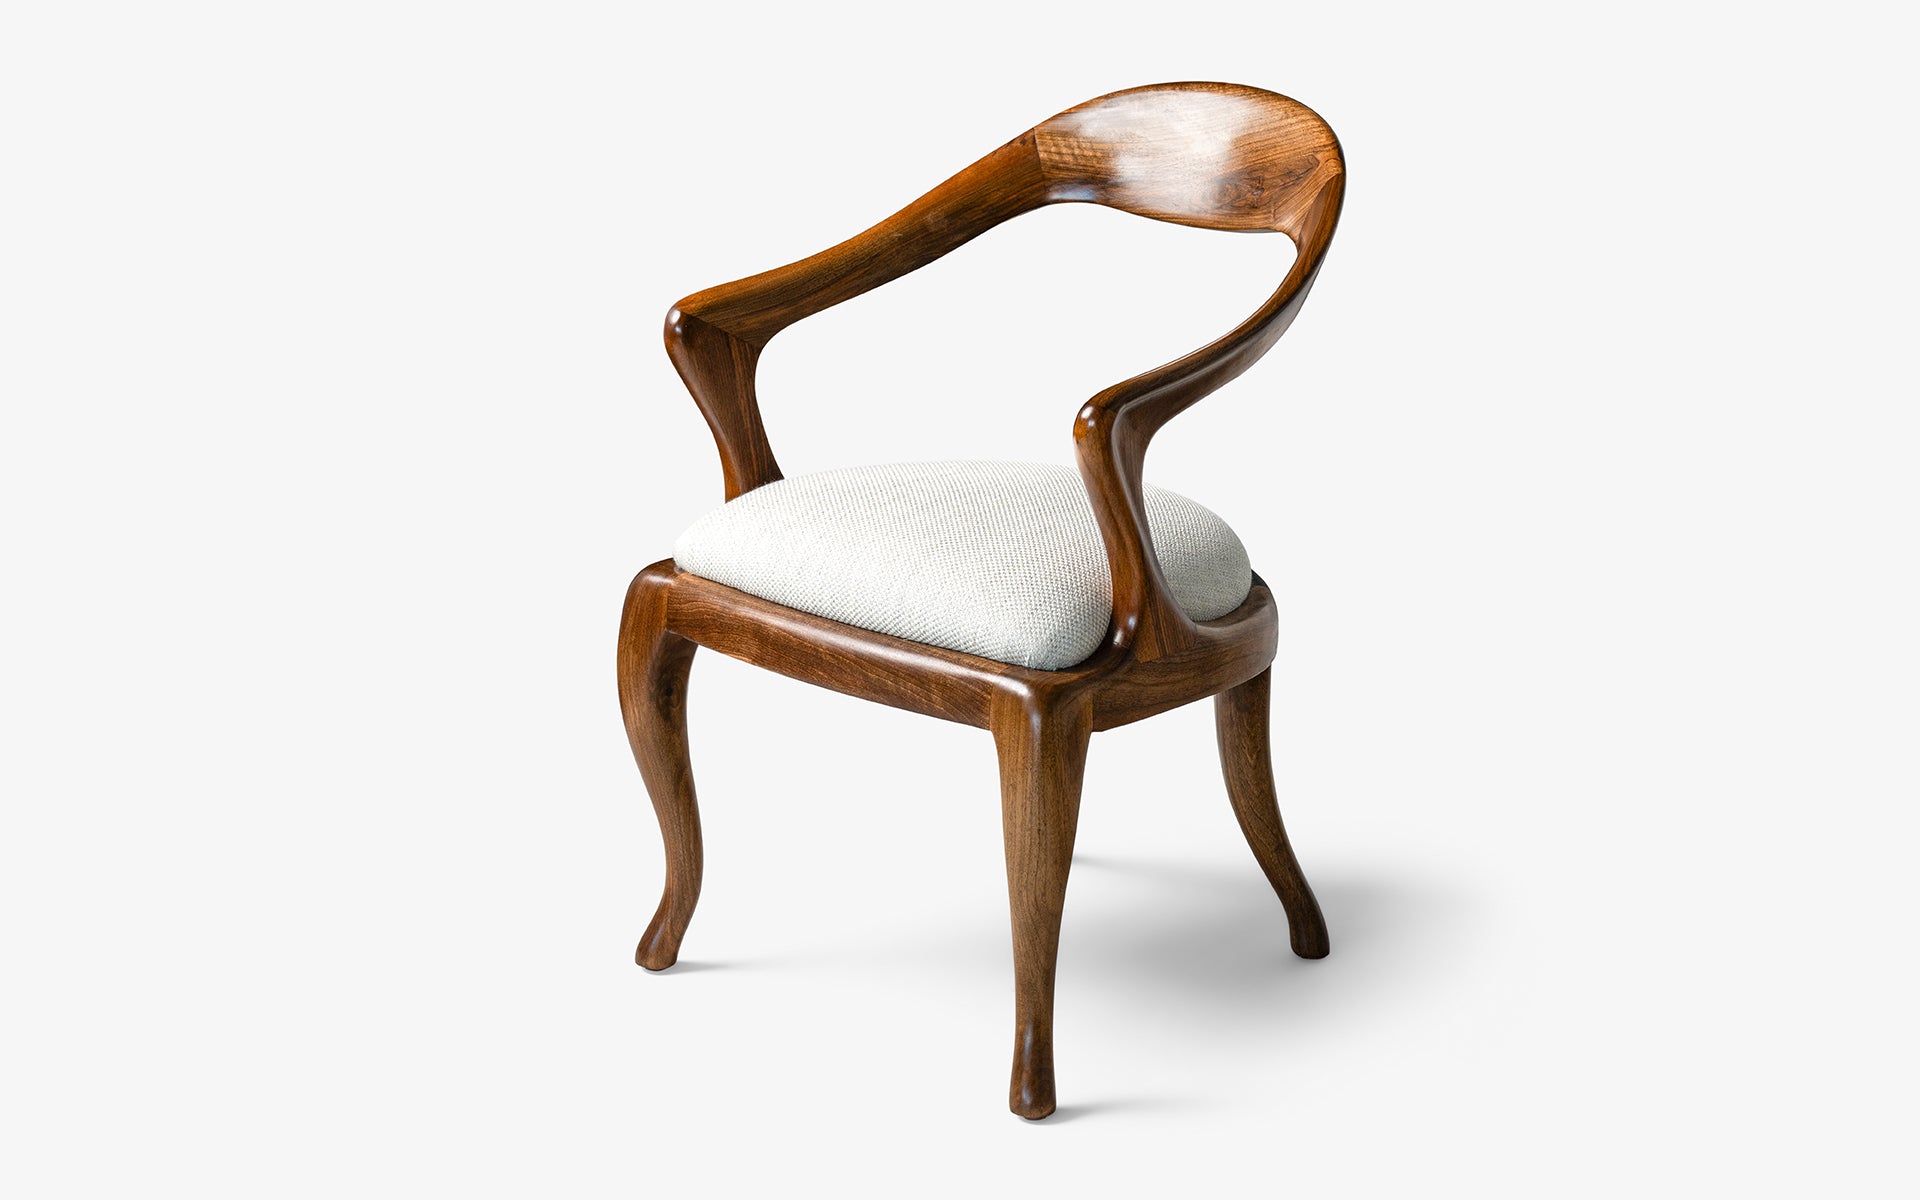 Yuki Wooden Chair